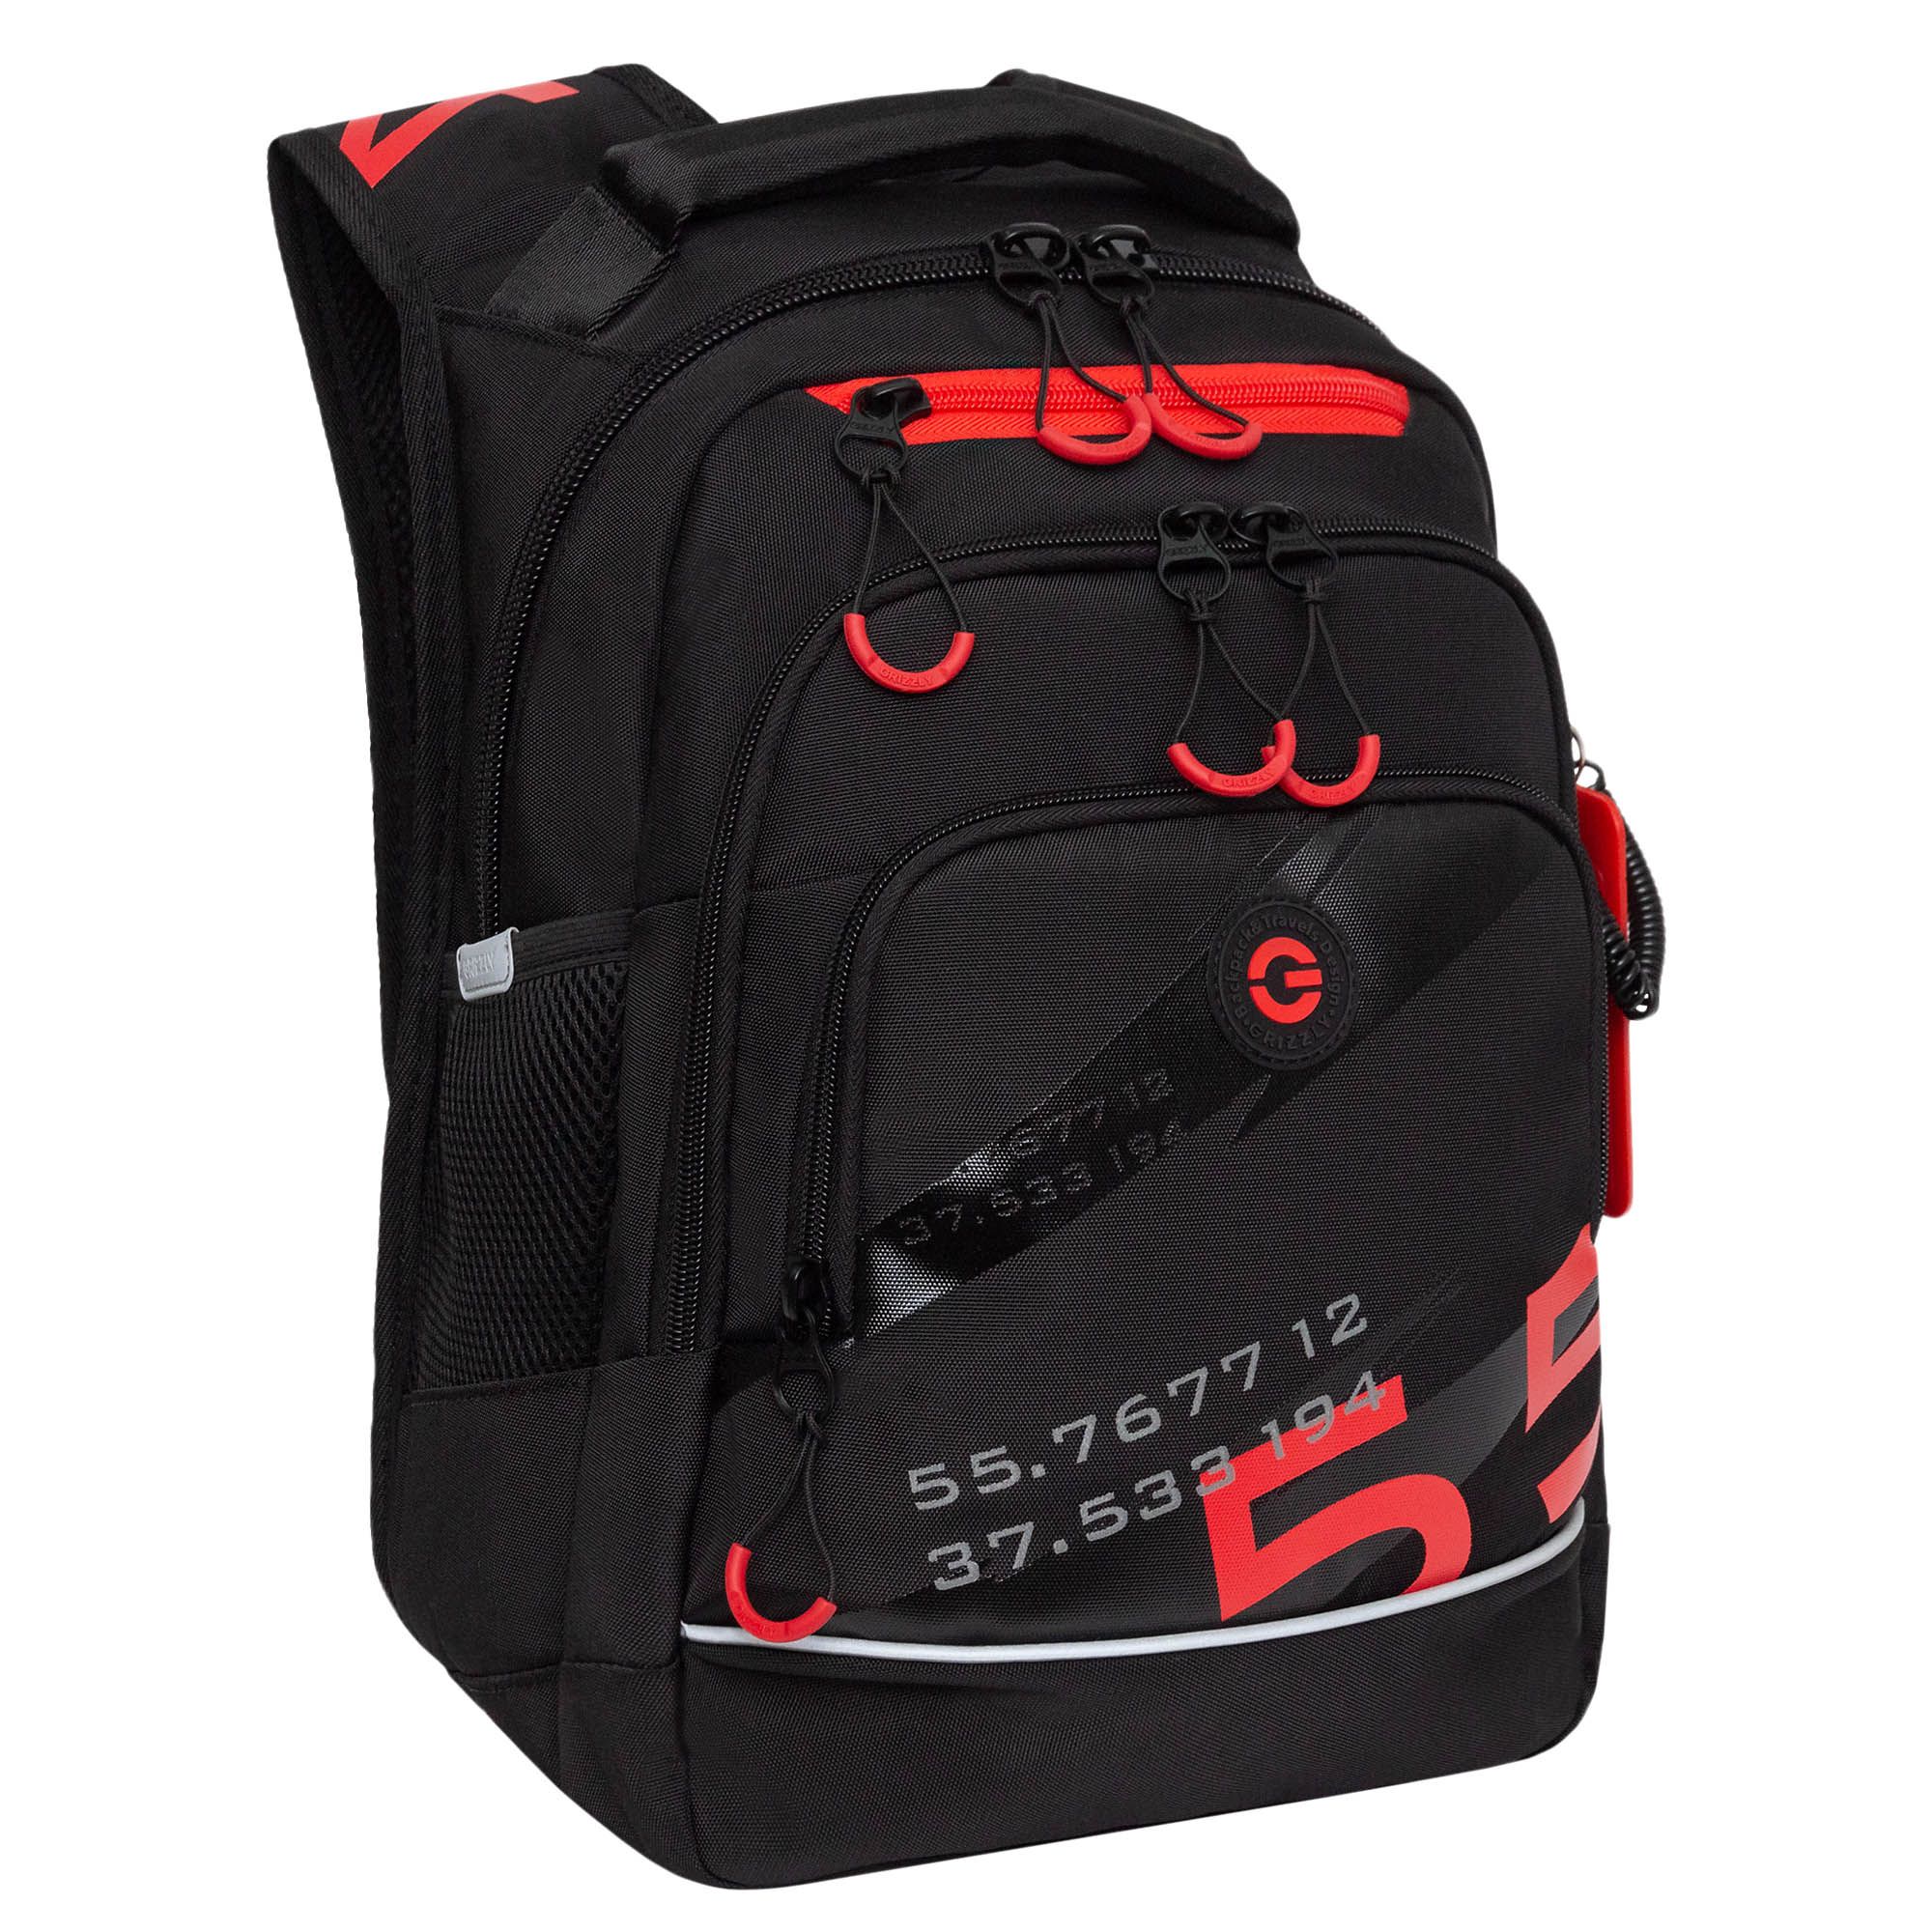 Рюкзак школьный GRIZZLY RB-450-2 с карманом для ноутбука 13 анатомический черный красный рюкзак молодежный grizzly rd 440 4 1 с карманом для ноутбука 13 золото